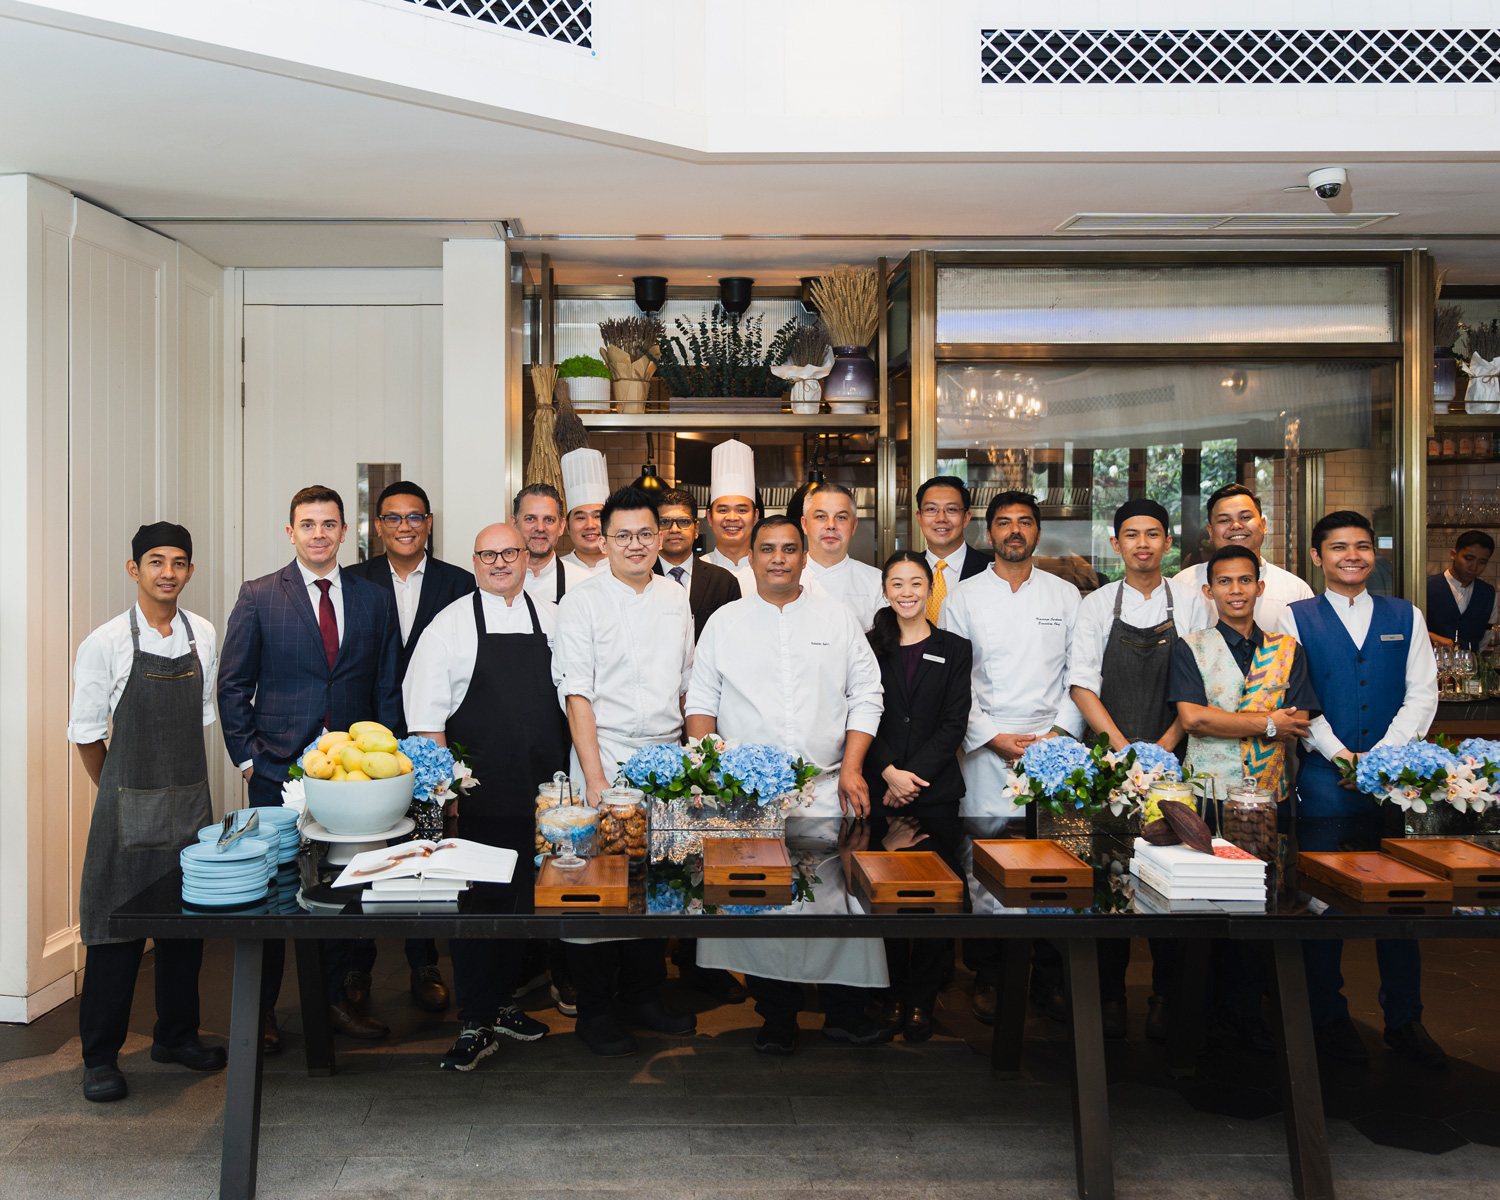 吉隆坡Grand Hyatt酒店推出第2届#DinewithChef美食节